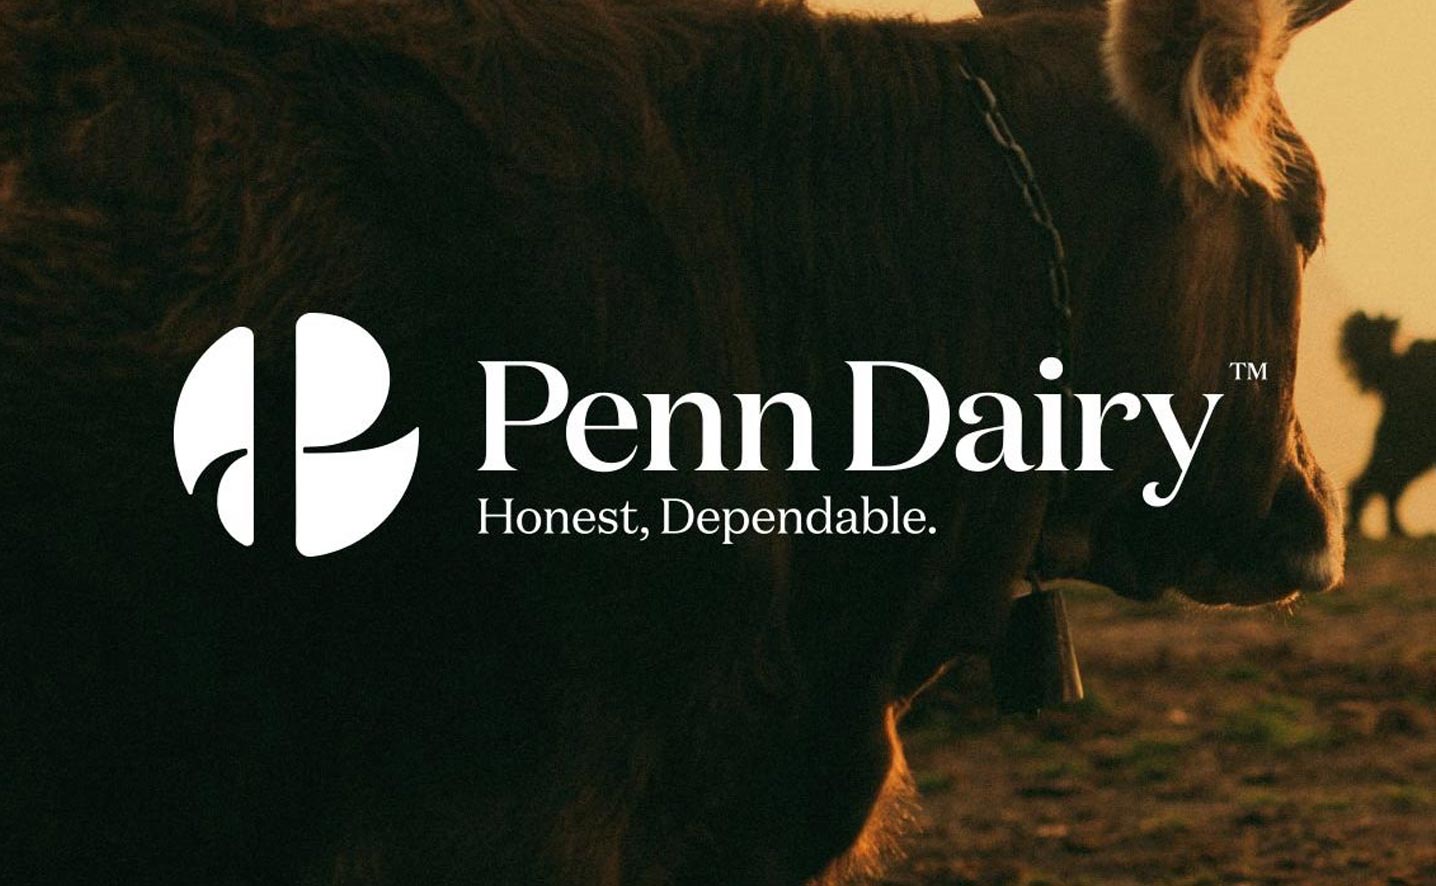 Penn Dairy